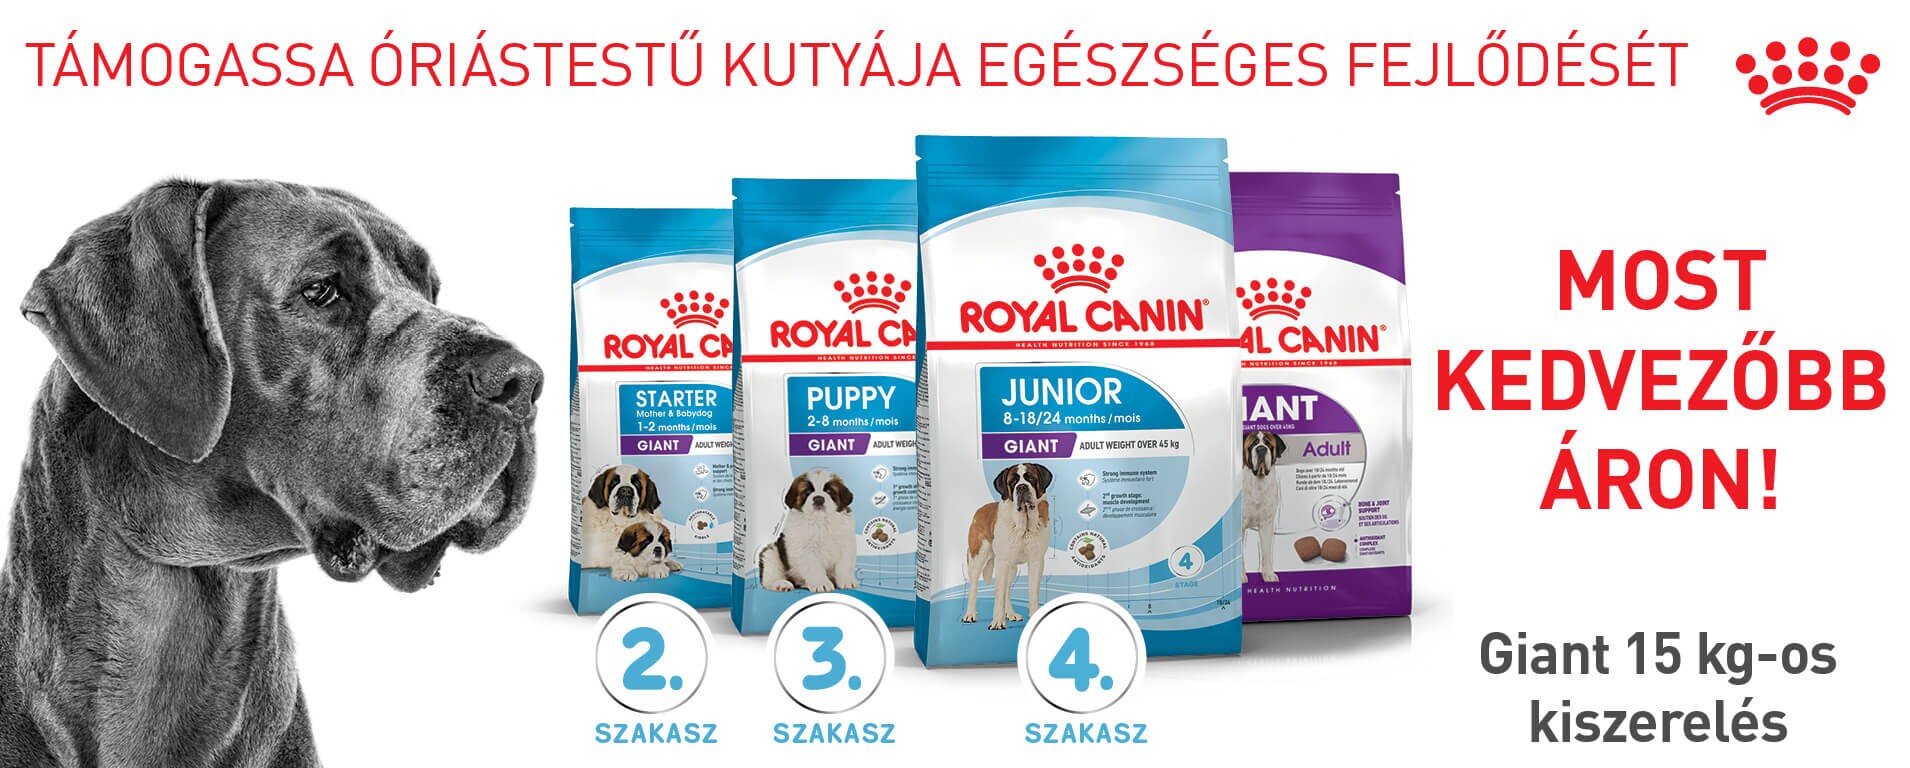 Royal Canin száraz kutyatápok 7% kedvezménnyel